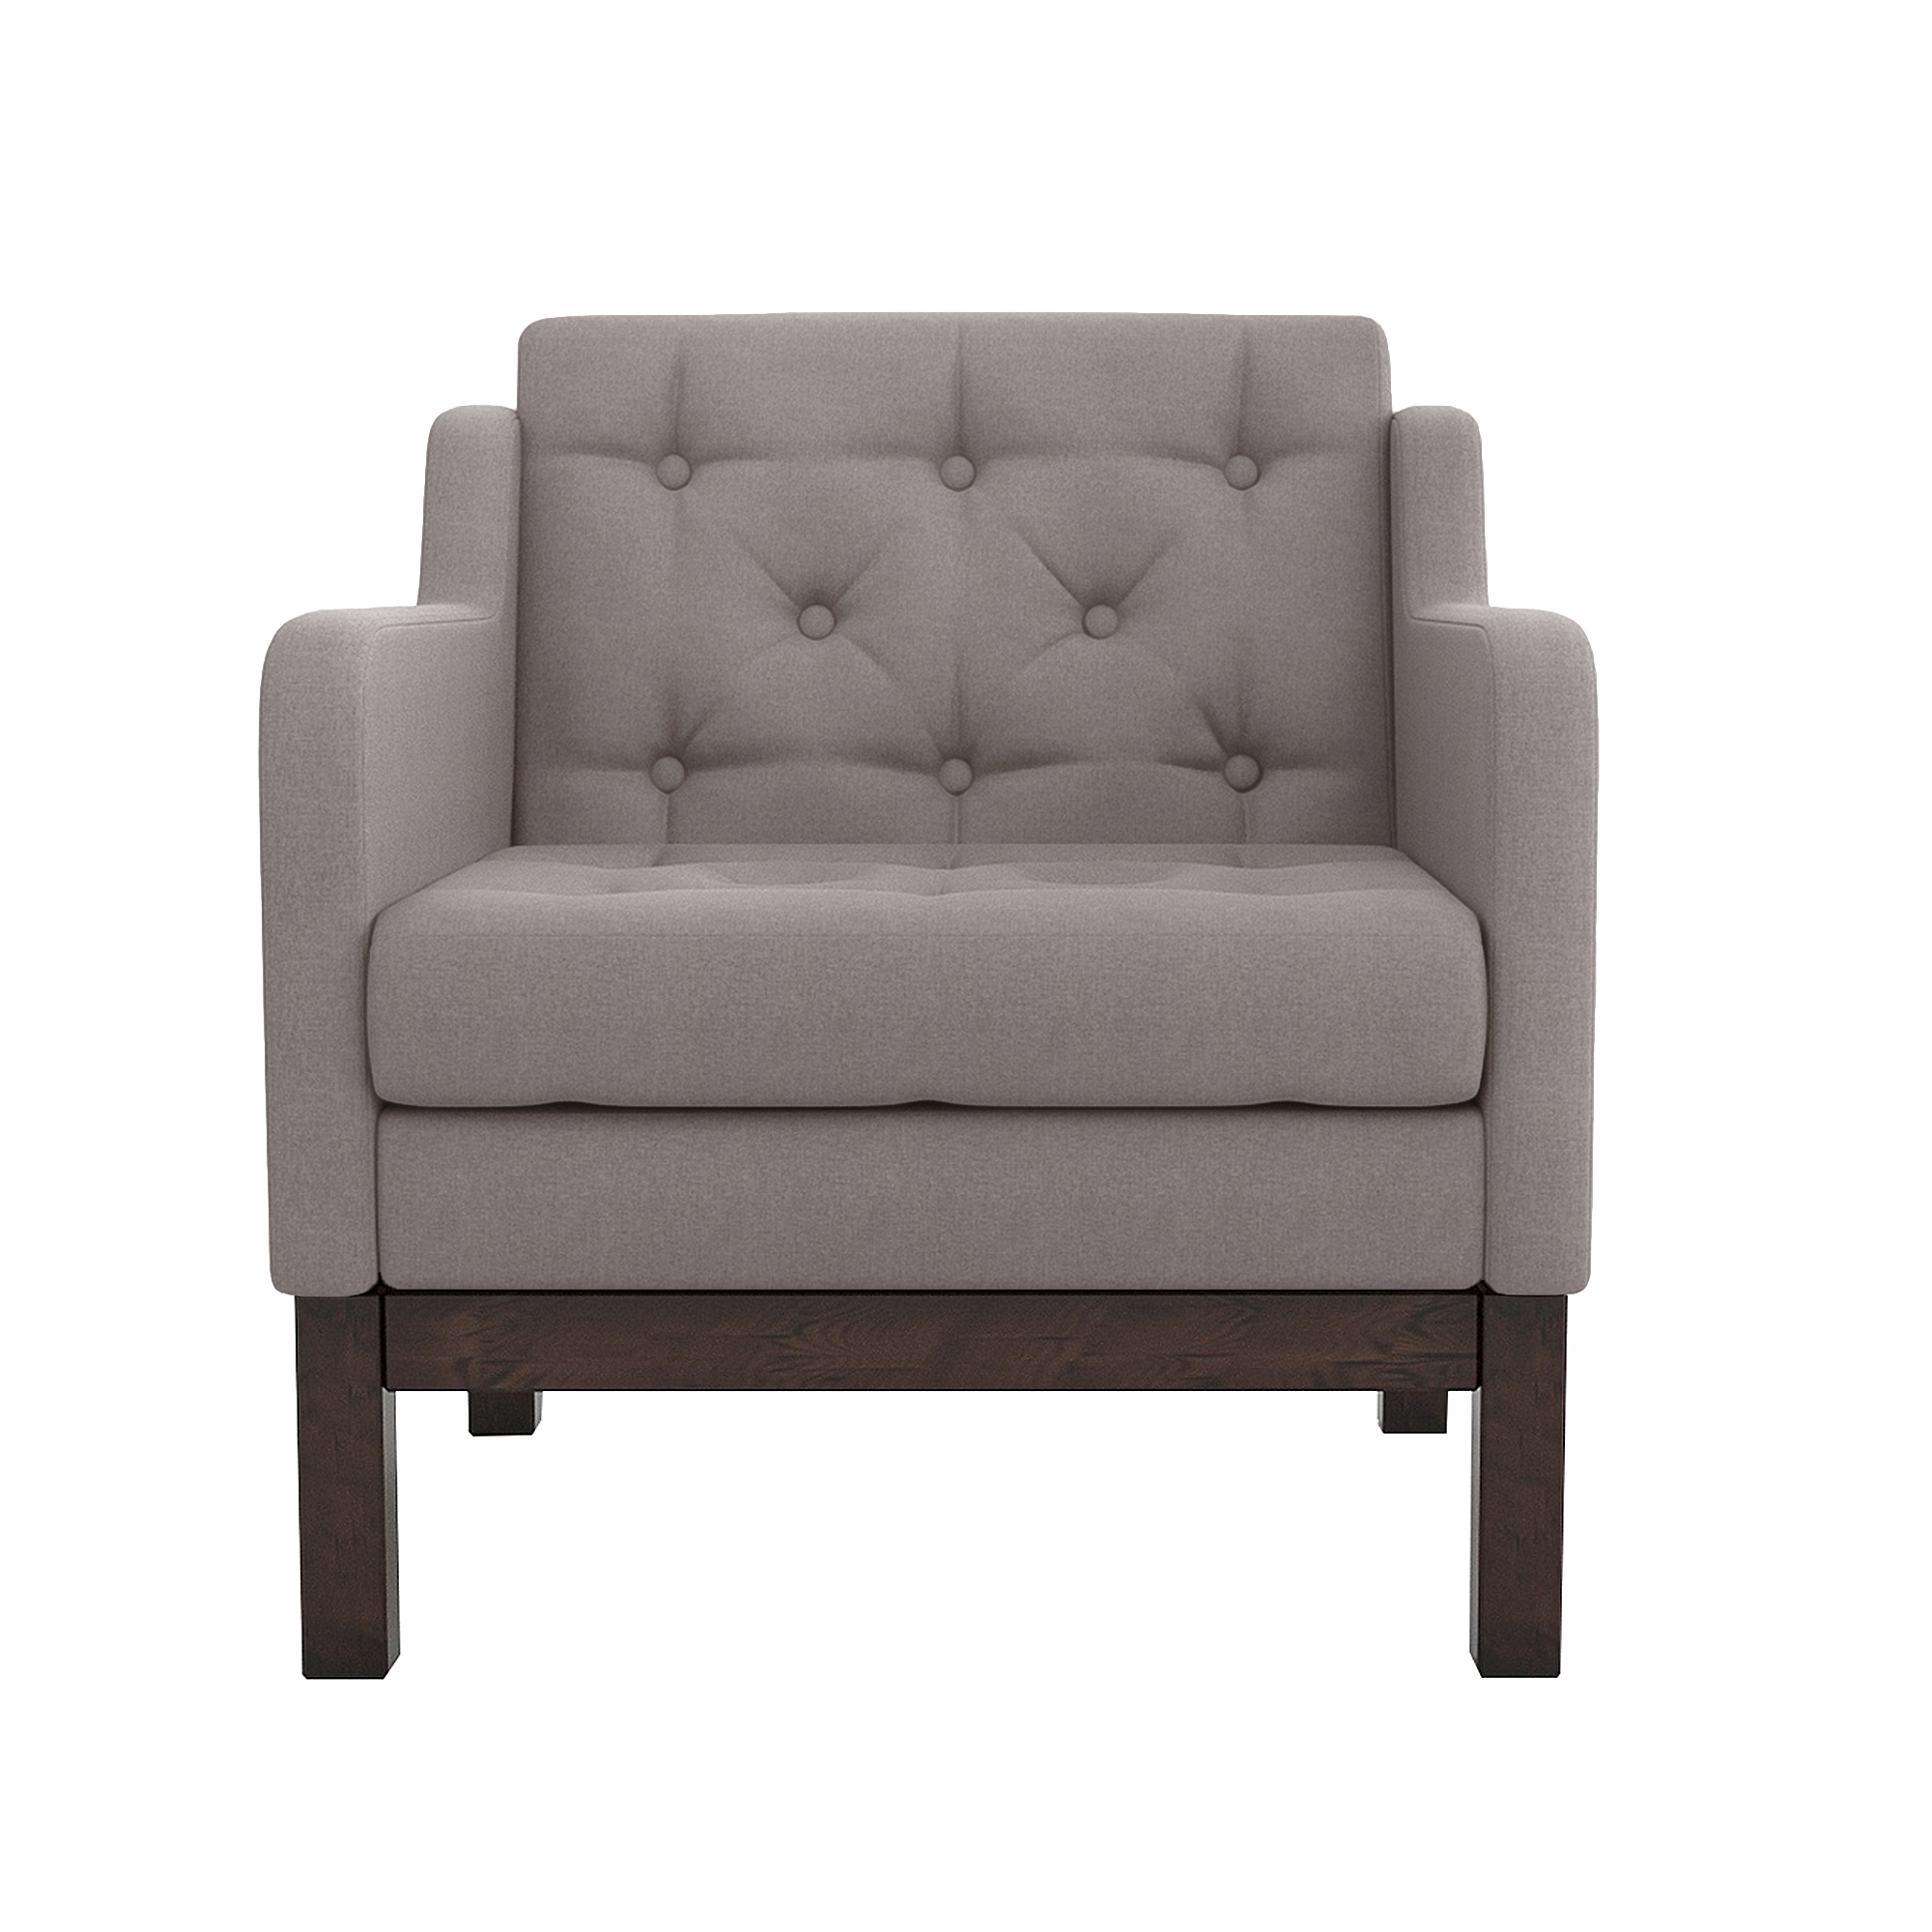 Кресло AS Алана 75.5x82x83 венге/вижн, цвет серо-коричневый - фото 2